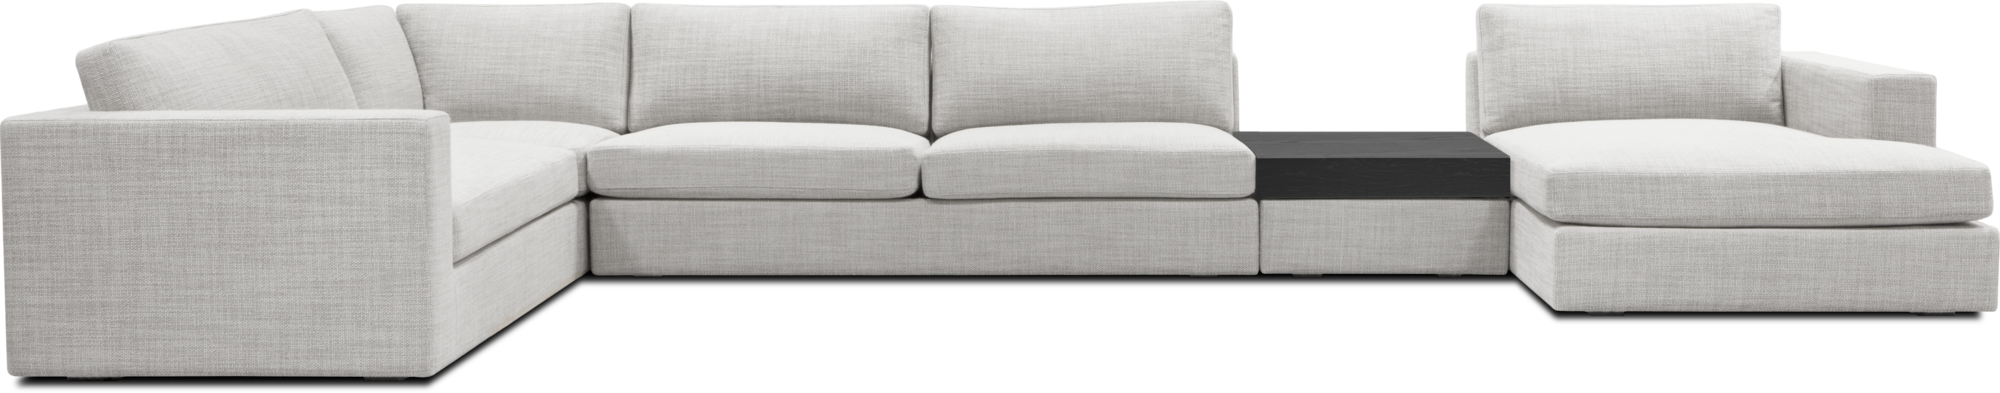 Maddox modular sofa